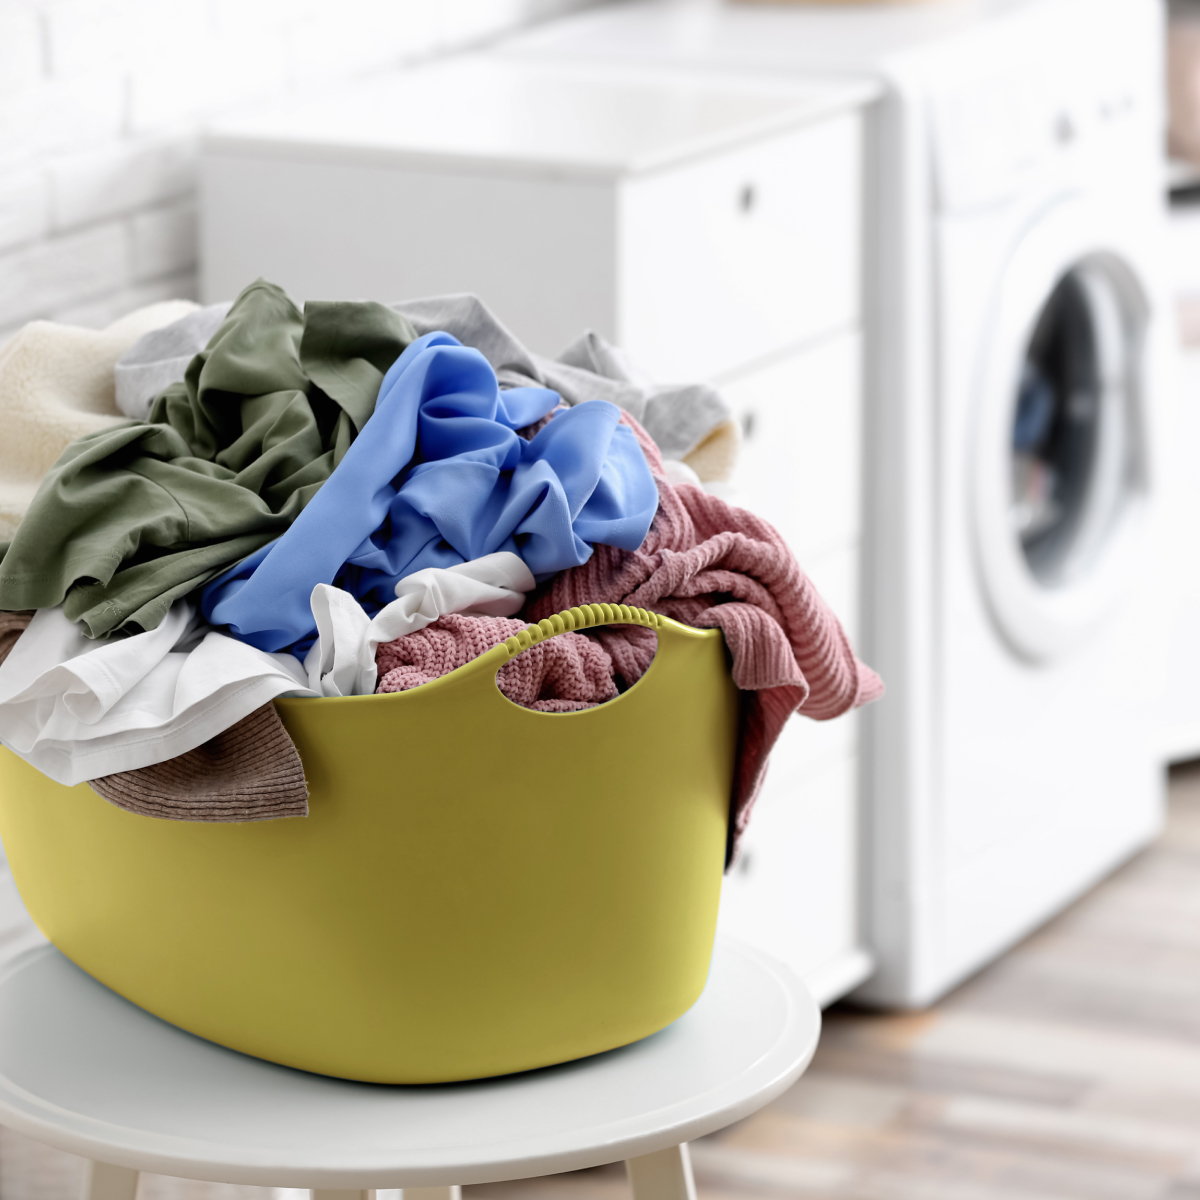 เลือกขนาดของเครื่องซักผ้าจากพื้นที่การติดตั้งเครื่องซักผ้าและจำนวนคนในครอบครัว